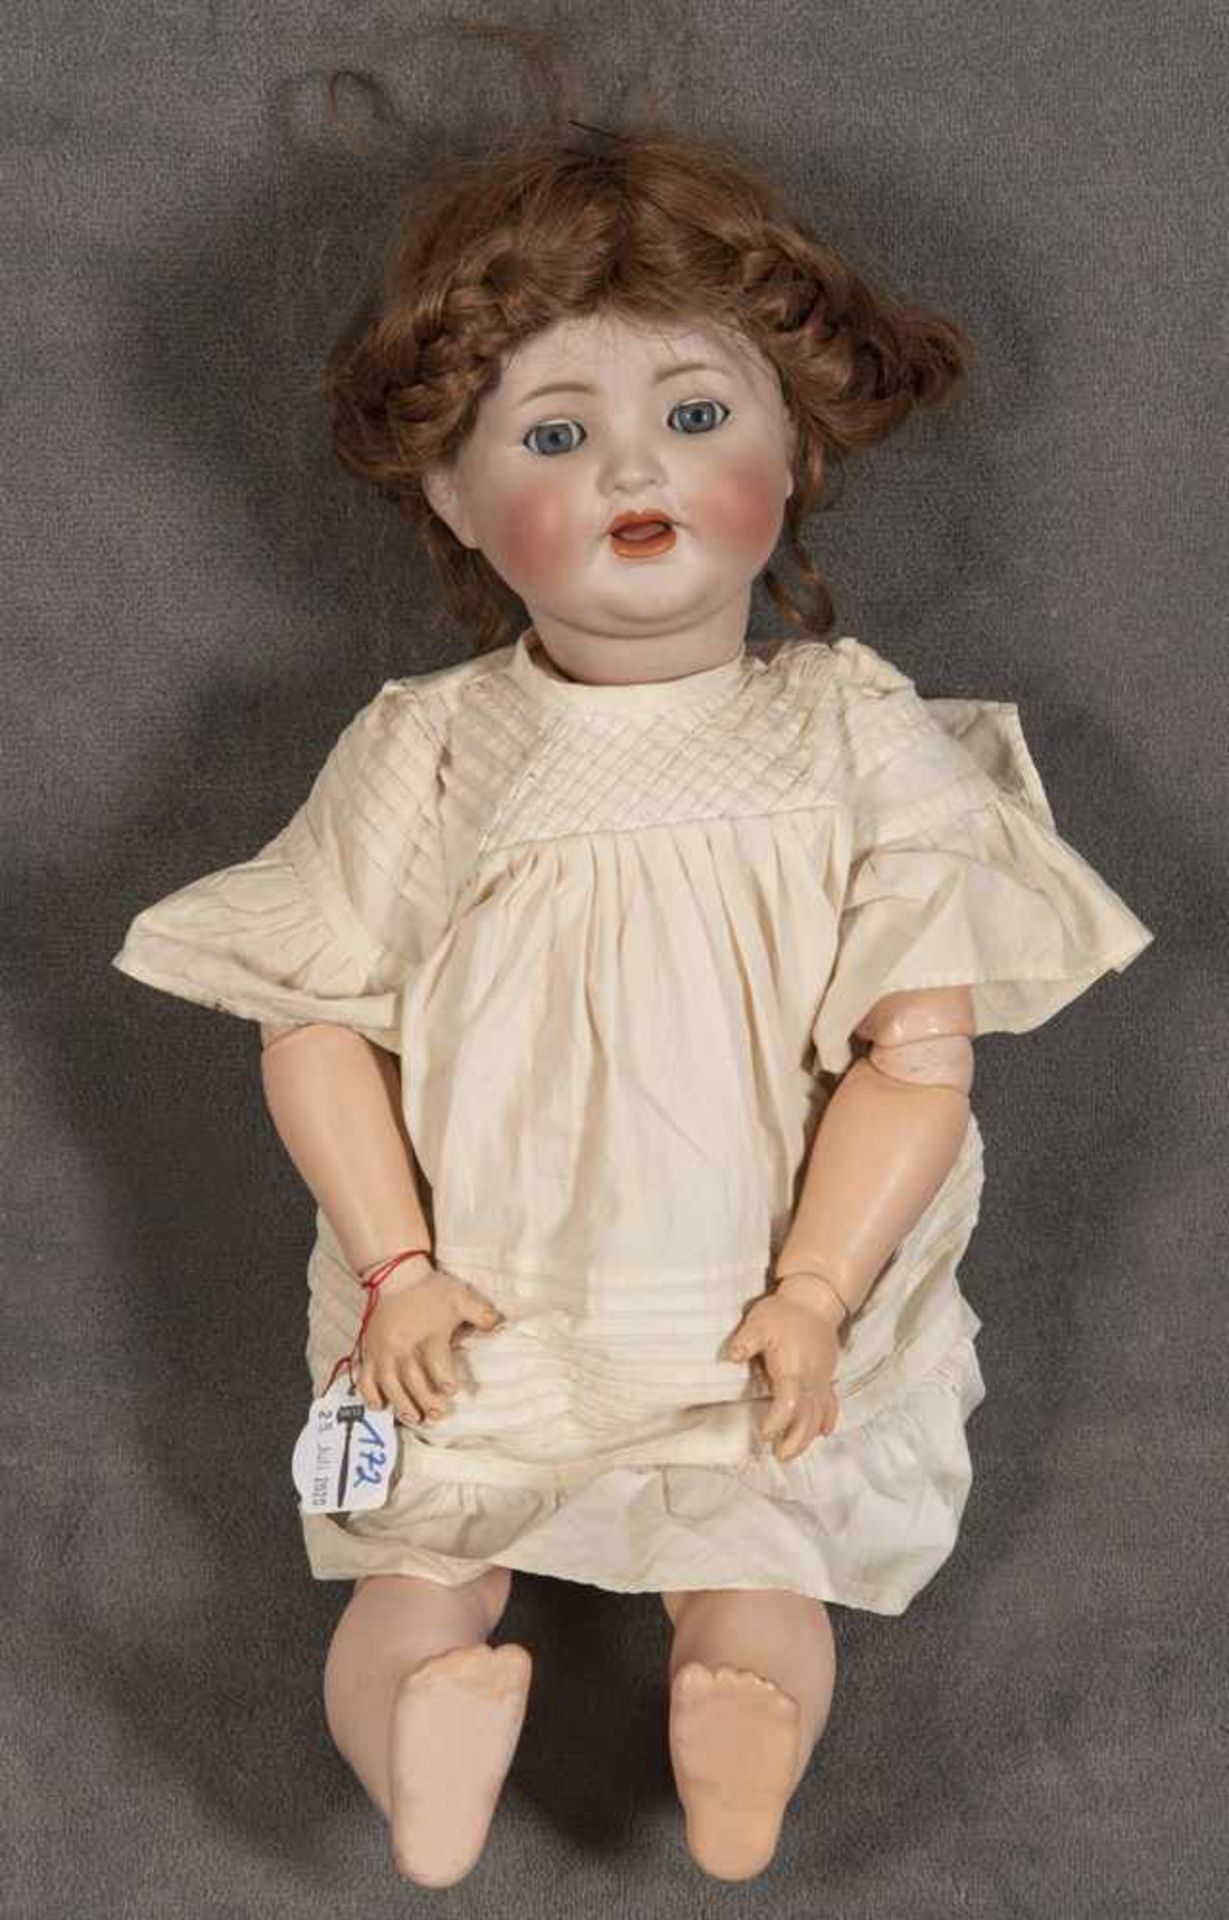 Porzellankopf-Puppe. Simon & Halbig um 1920. Mit offenem Mund, Schlafaugen und Echthaar-Perücke;